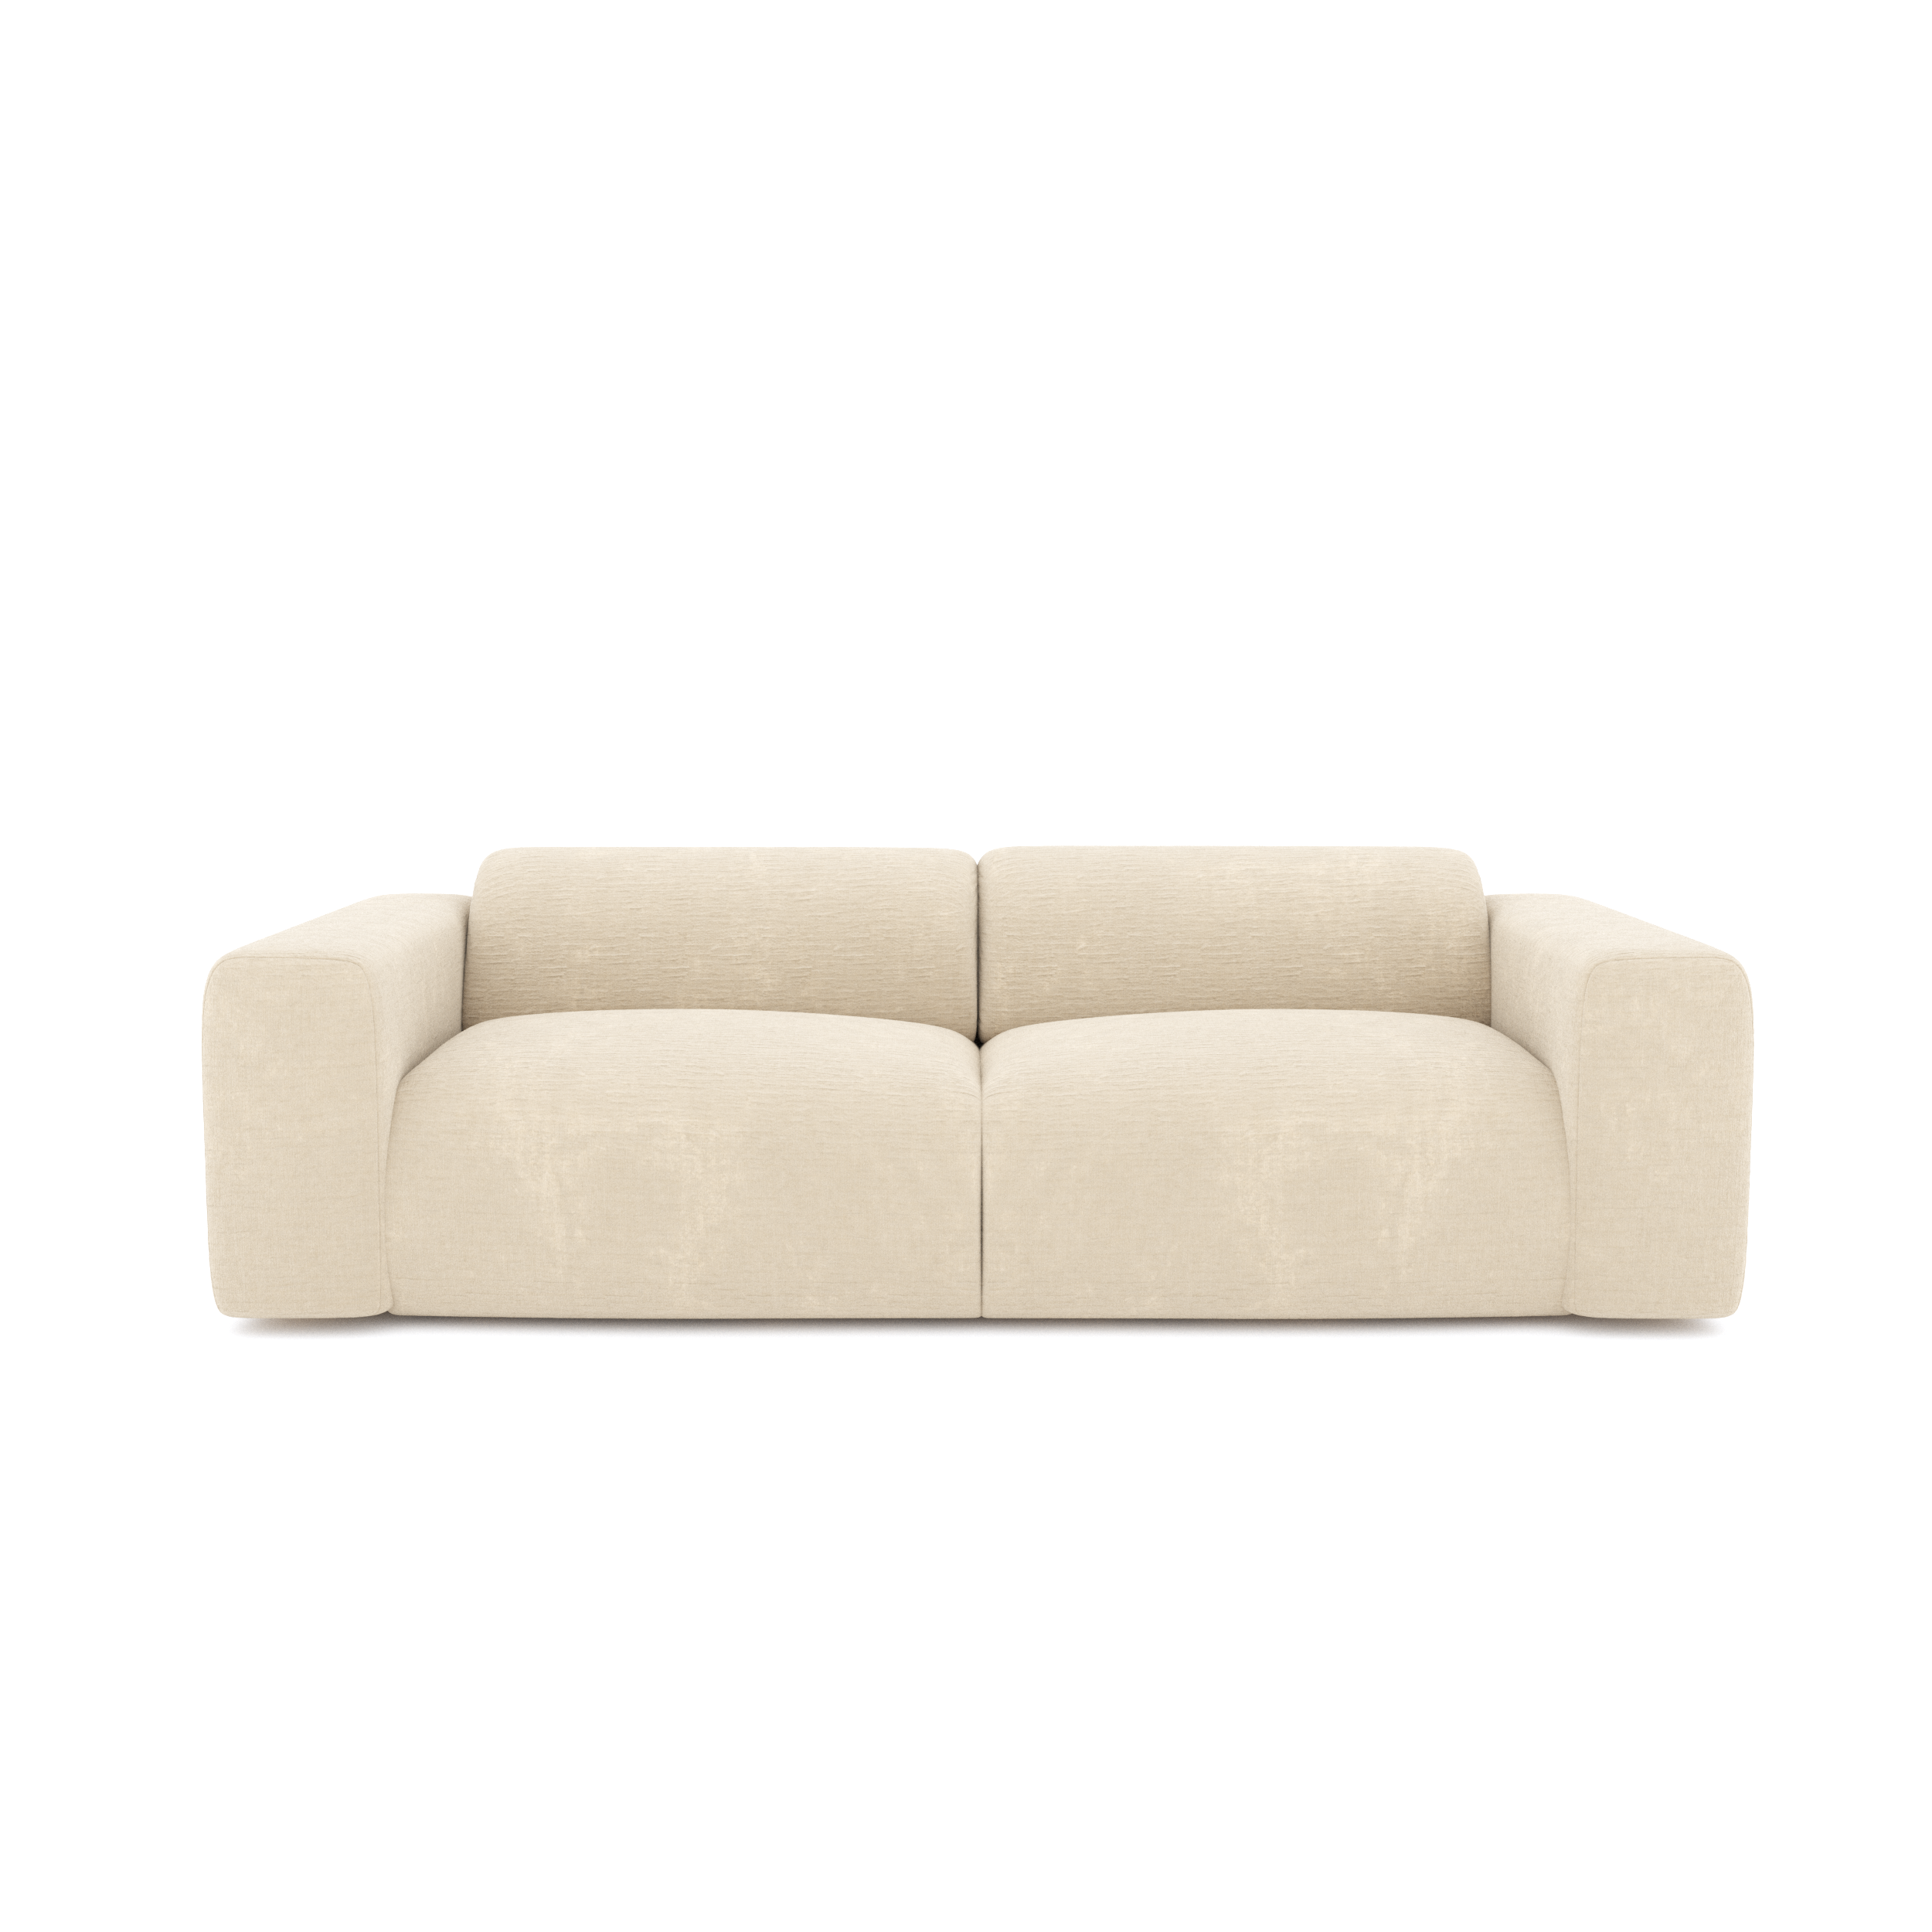 Sofá cama desenfundable de 2 plazas tapizado en gris claro SUN